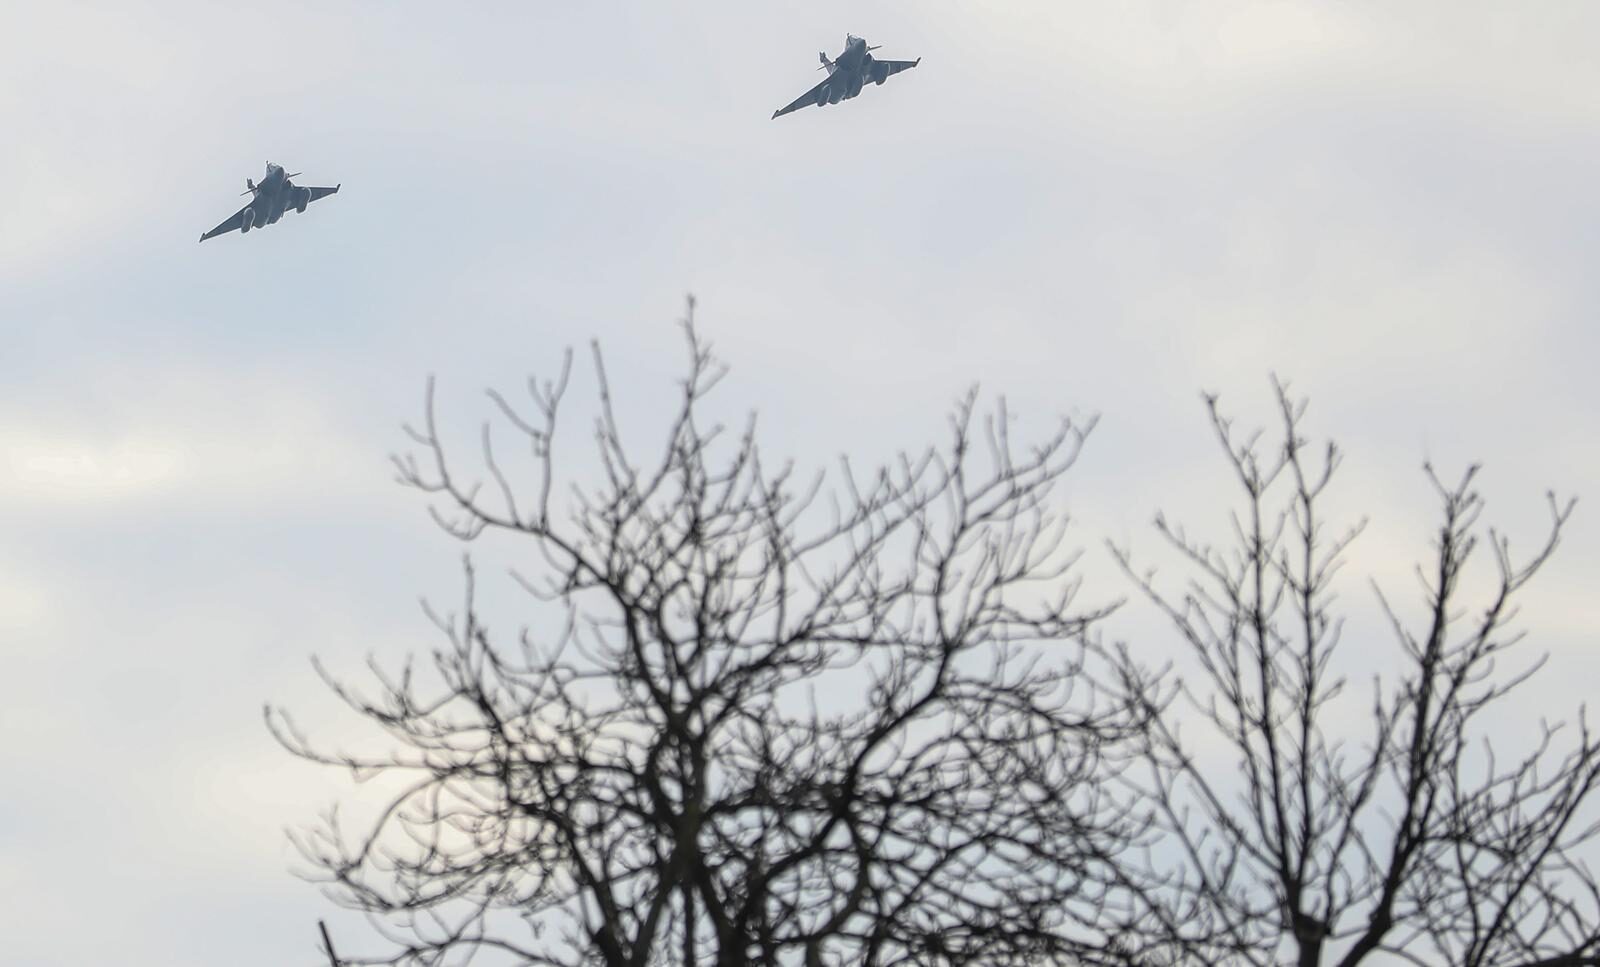 Dva borbena aviona preletila su iznad Zagreba